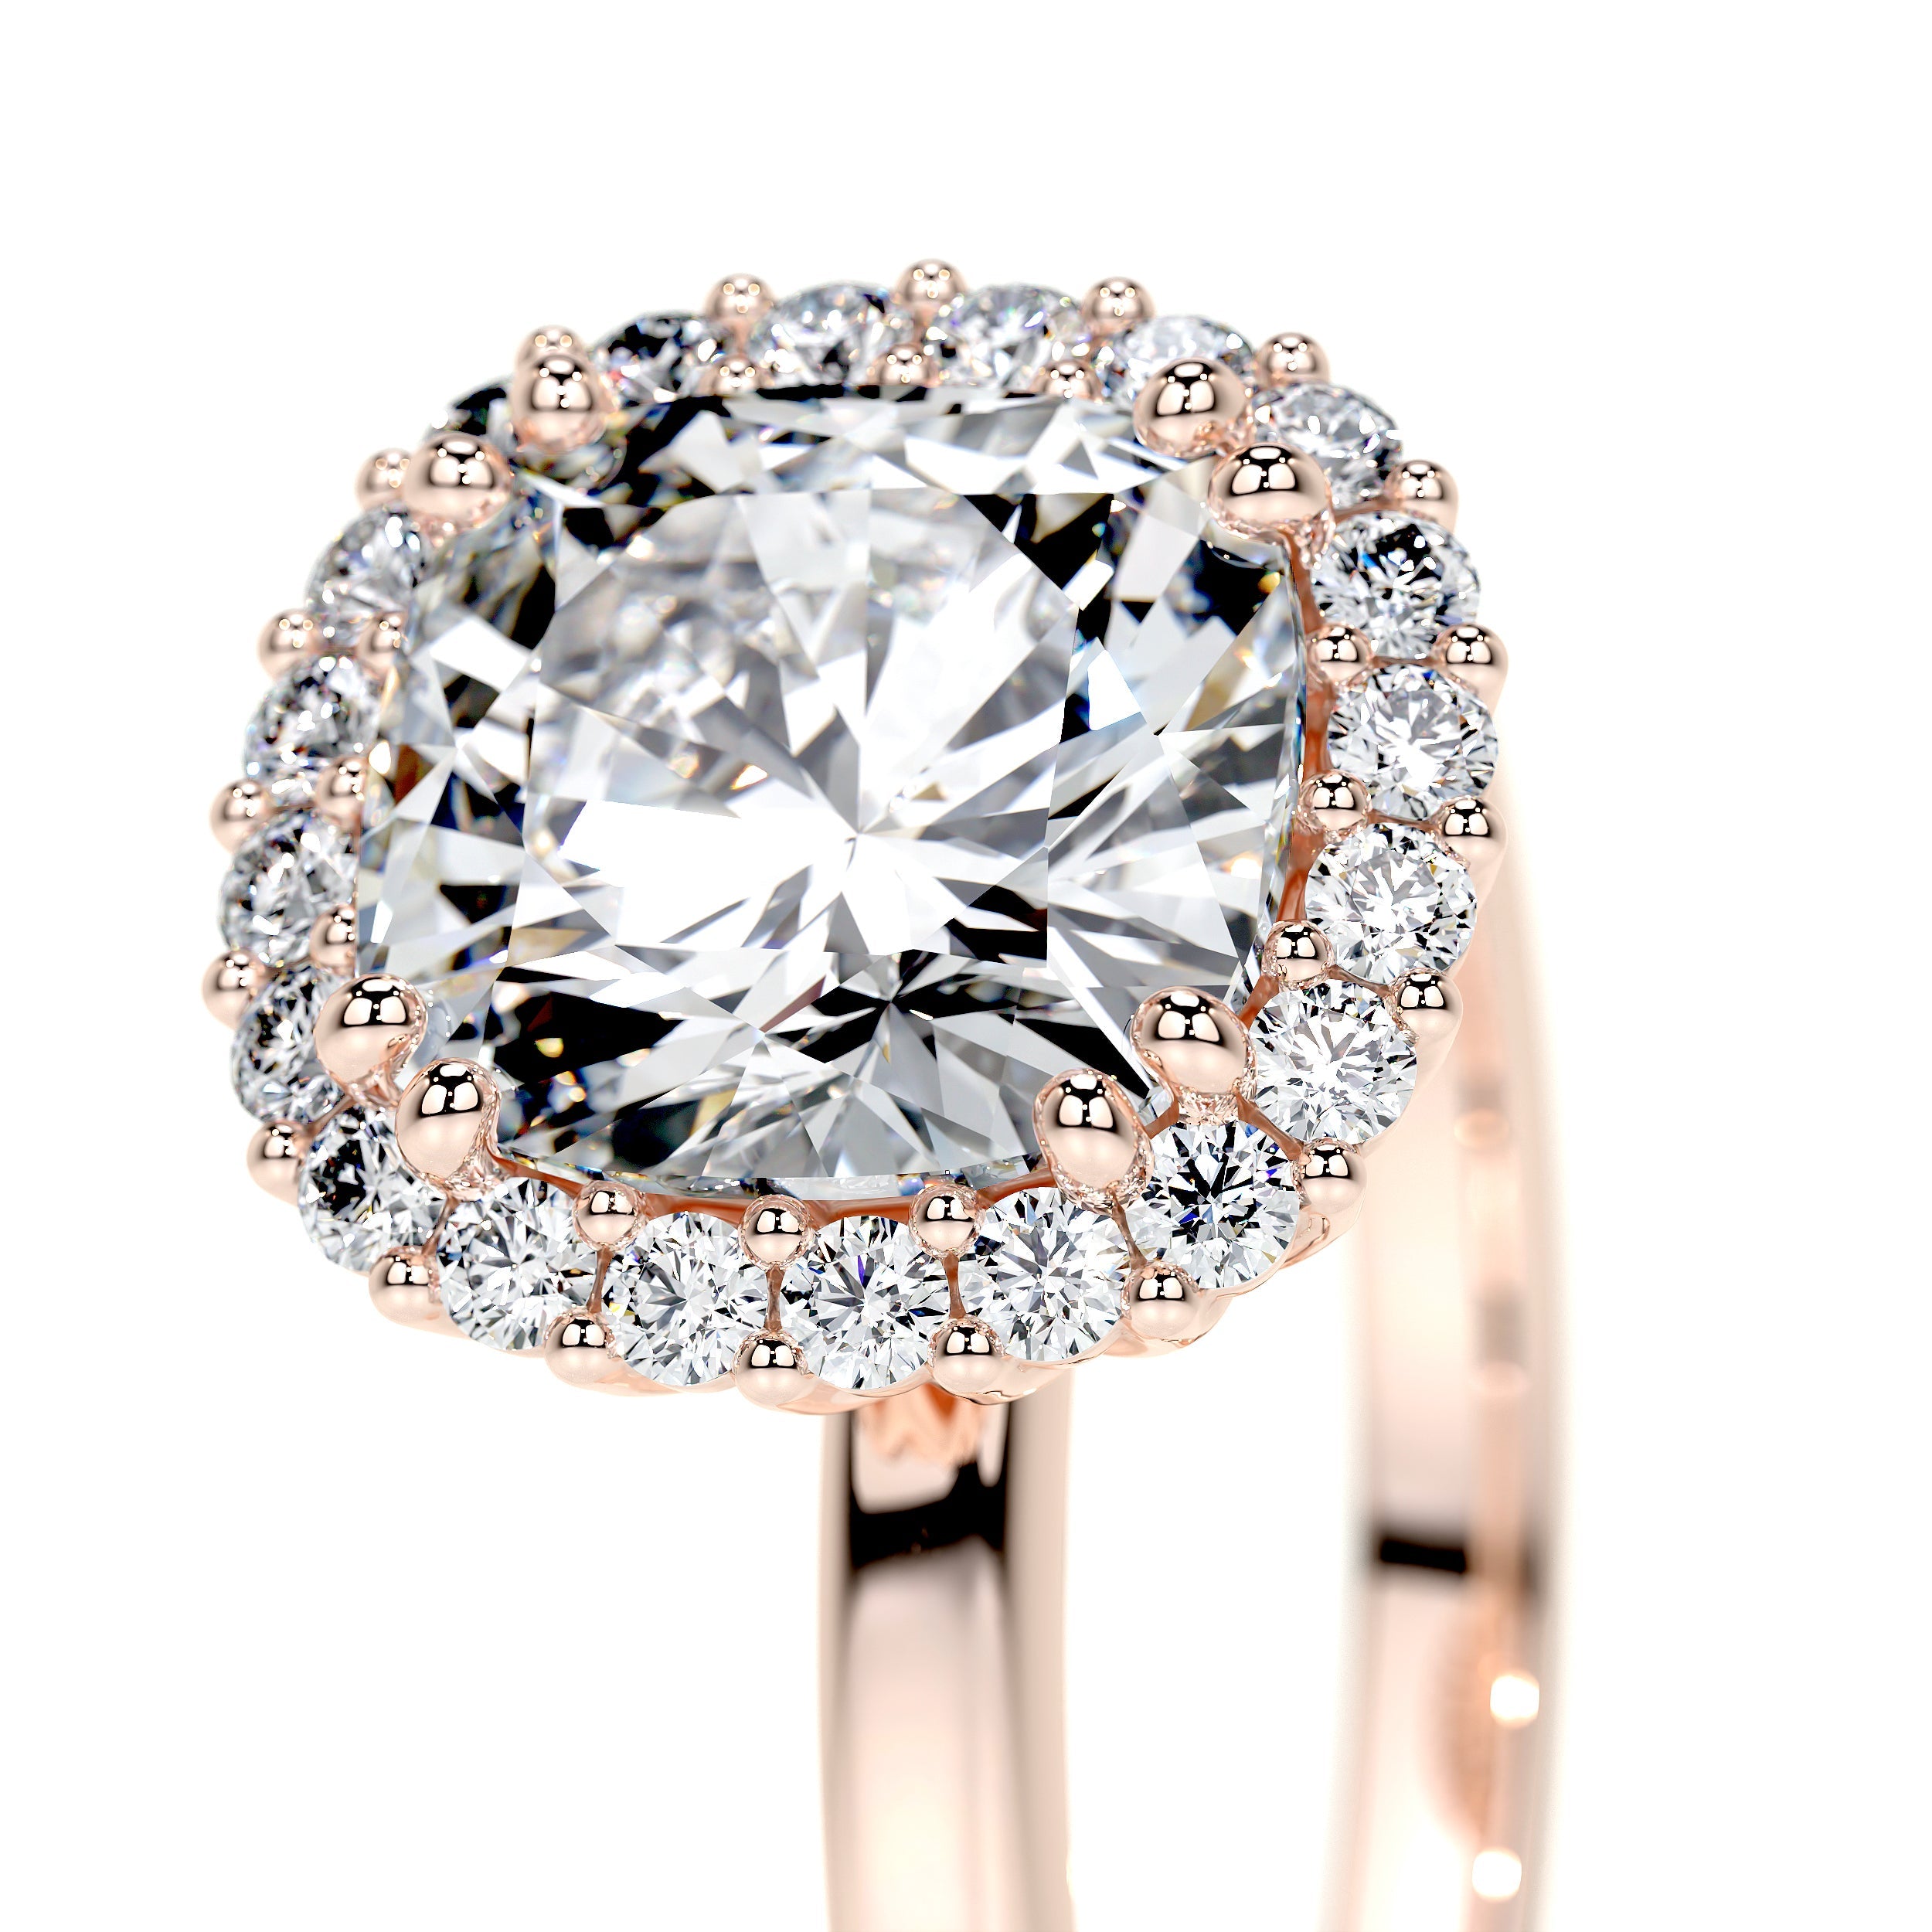 Bailey Lab Grown Diamond Ring   (2.25 Carat) -14K Rose Gold